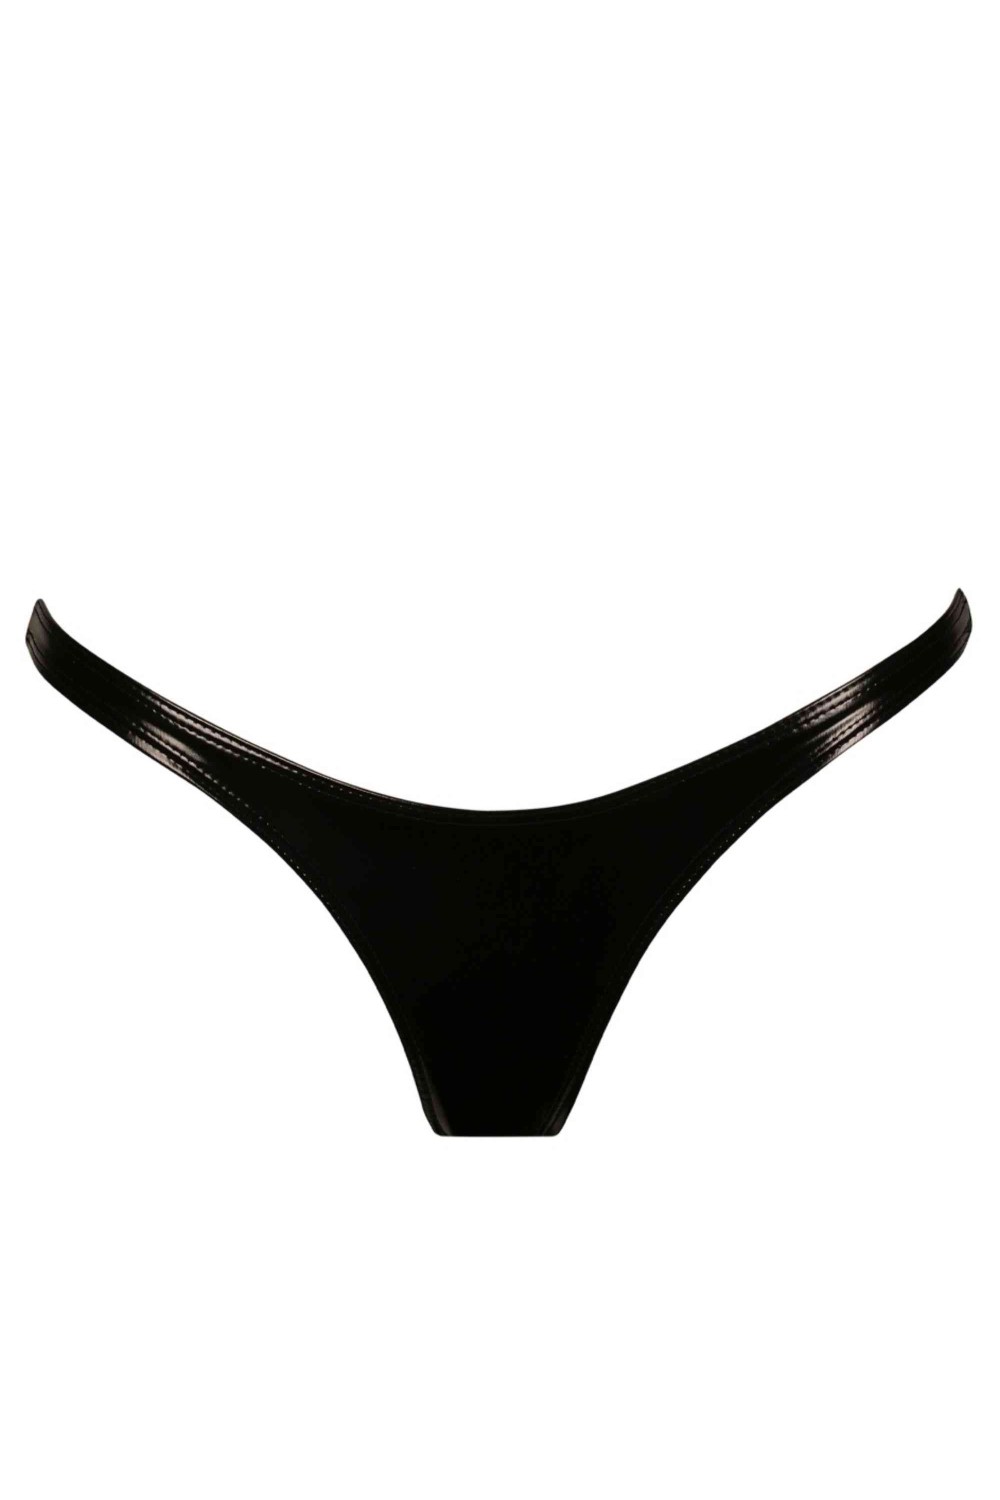 Abs by Allen Schwartz Women's annabel seamless thong panties - 3 pack 